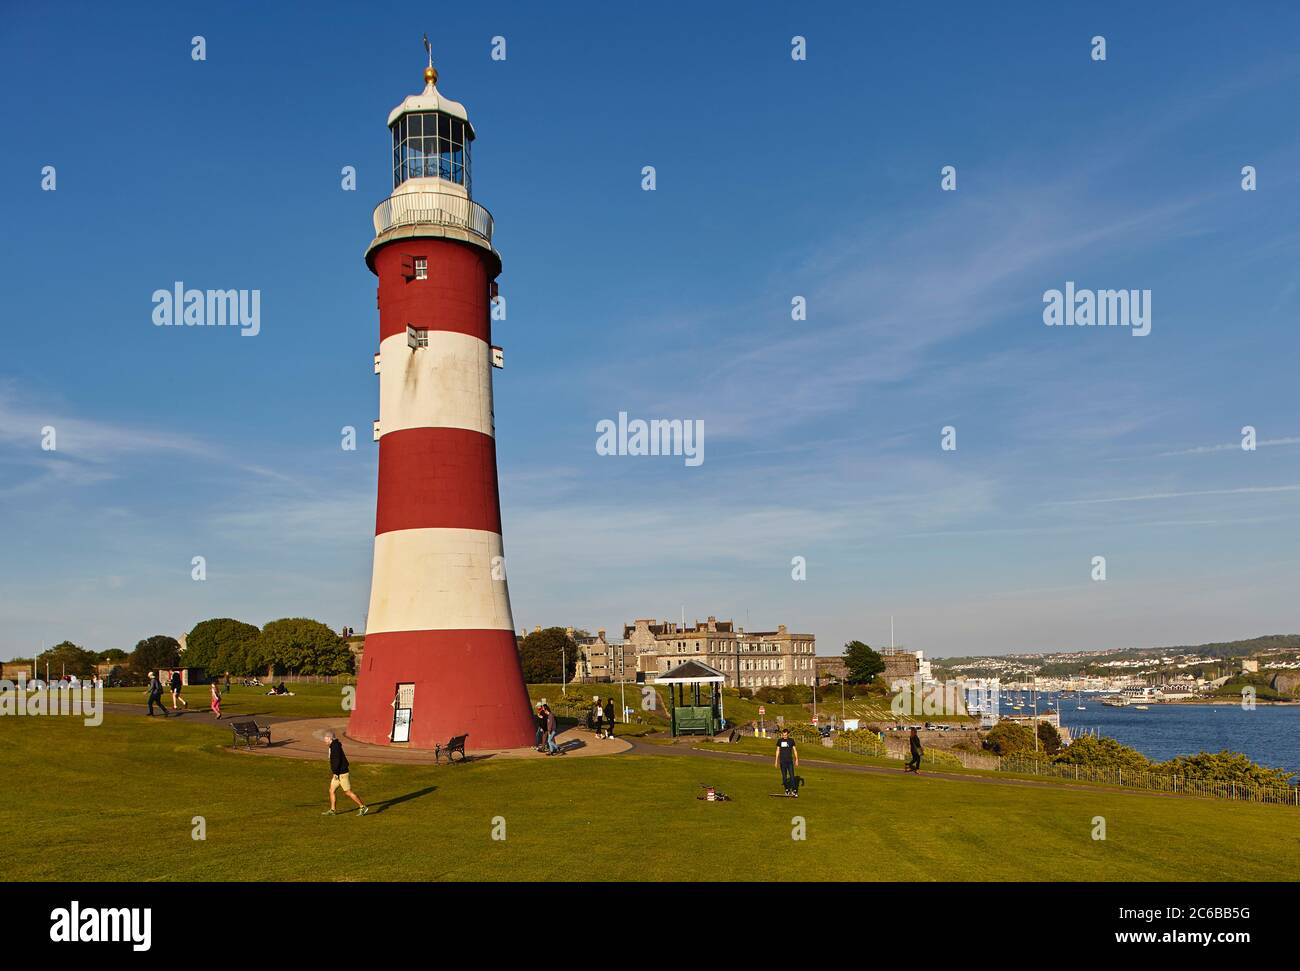 Ein historisches Denkmal an einem historischen Ort, Smeaton's Tower, auf Plymouth Hoe, in der Stadt Plymouth, Devon, England, Großbritannien, Europa Stockfoto